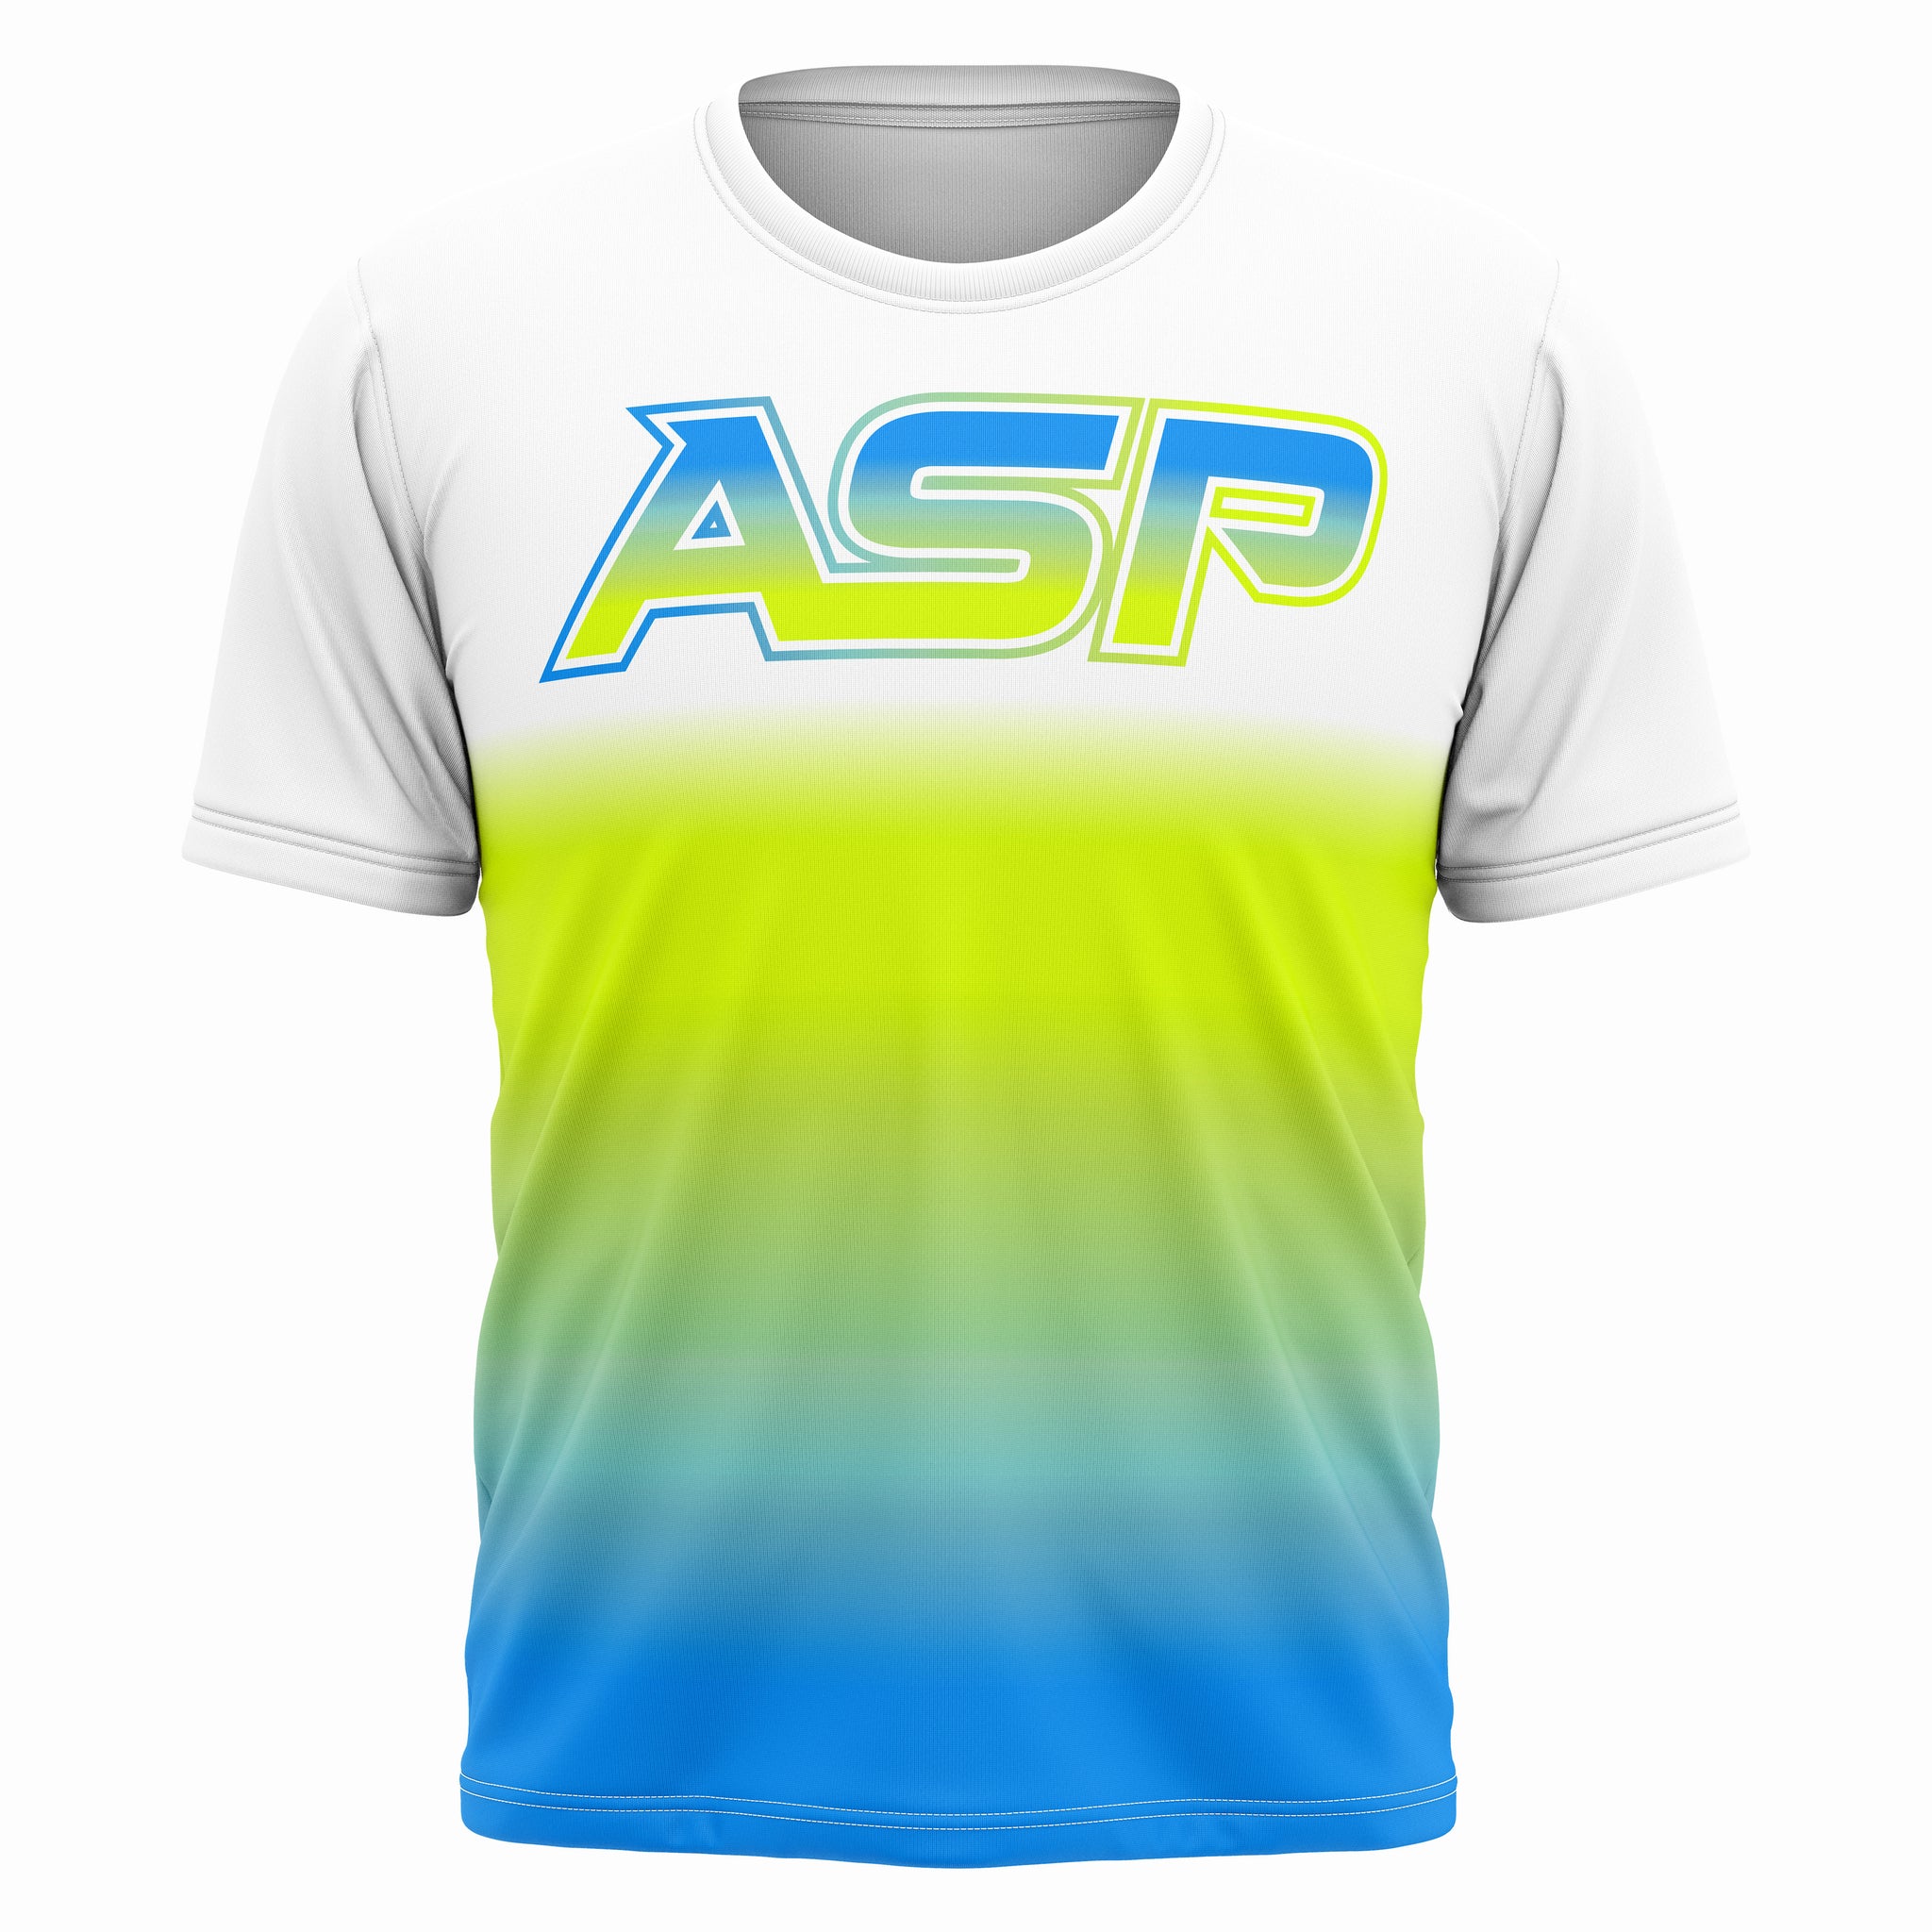 ASP Gradient Series 1.0 Short Sleeve